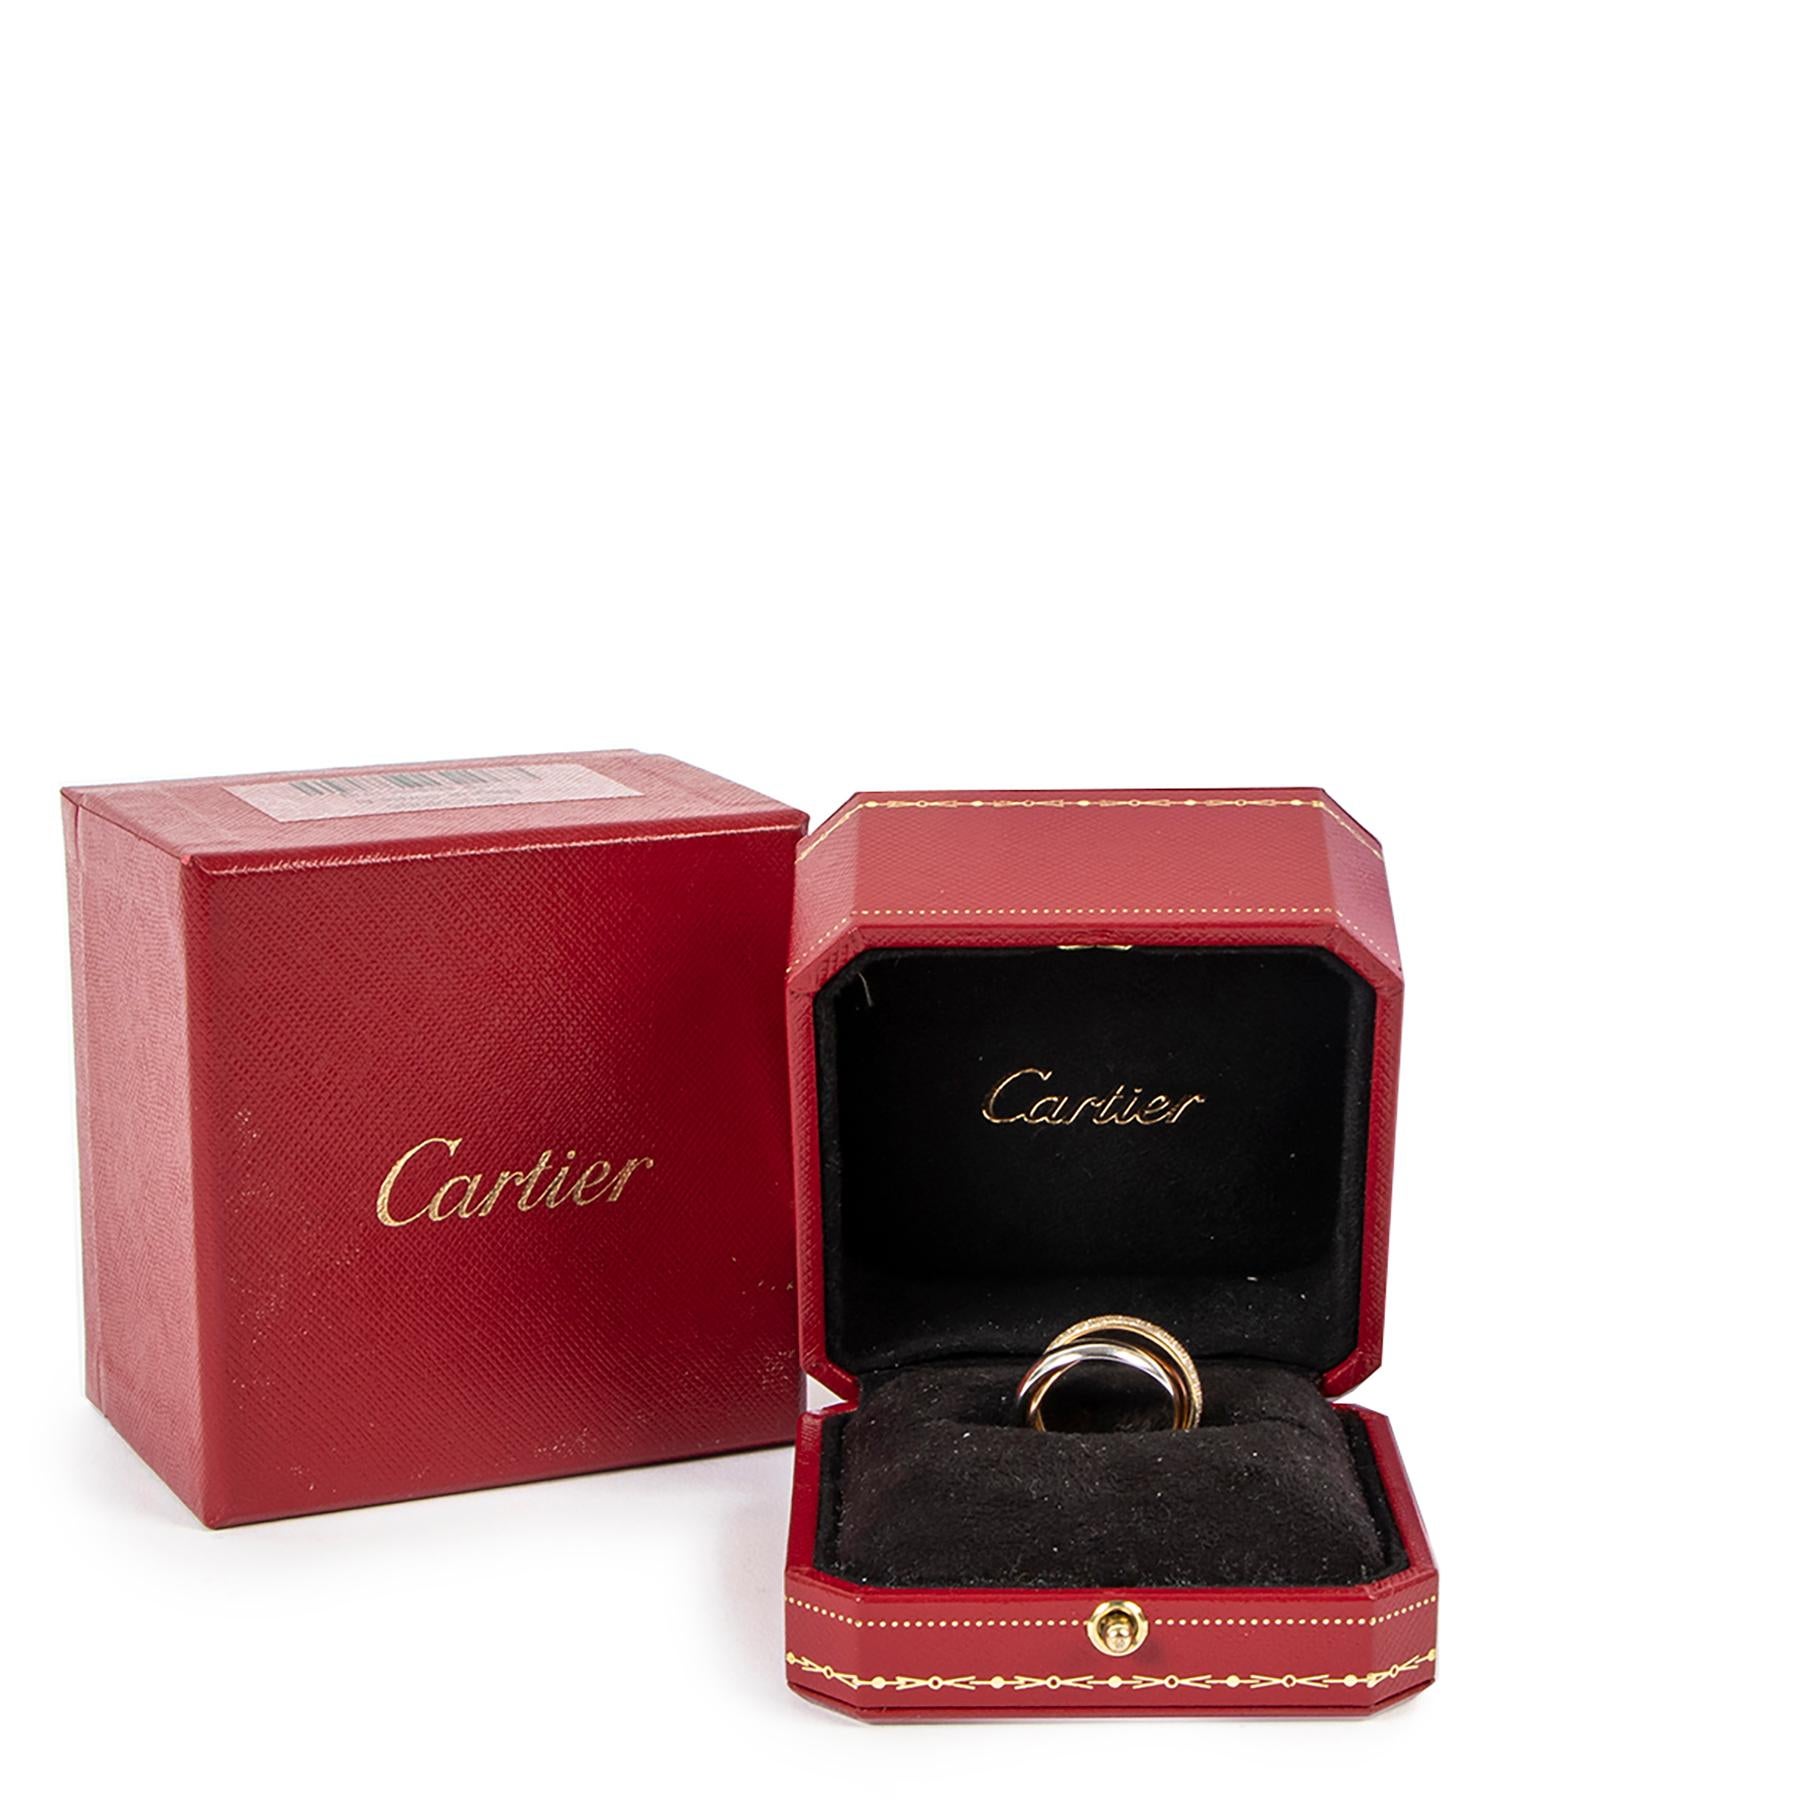 Cette bague Trinity iconique de Cartier en petit modèle, or blanc 750/1000, or rose 750/1000, or jaune 750/1000, sertie de diamants taille brillant.

Livré avec :
Boîte
